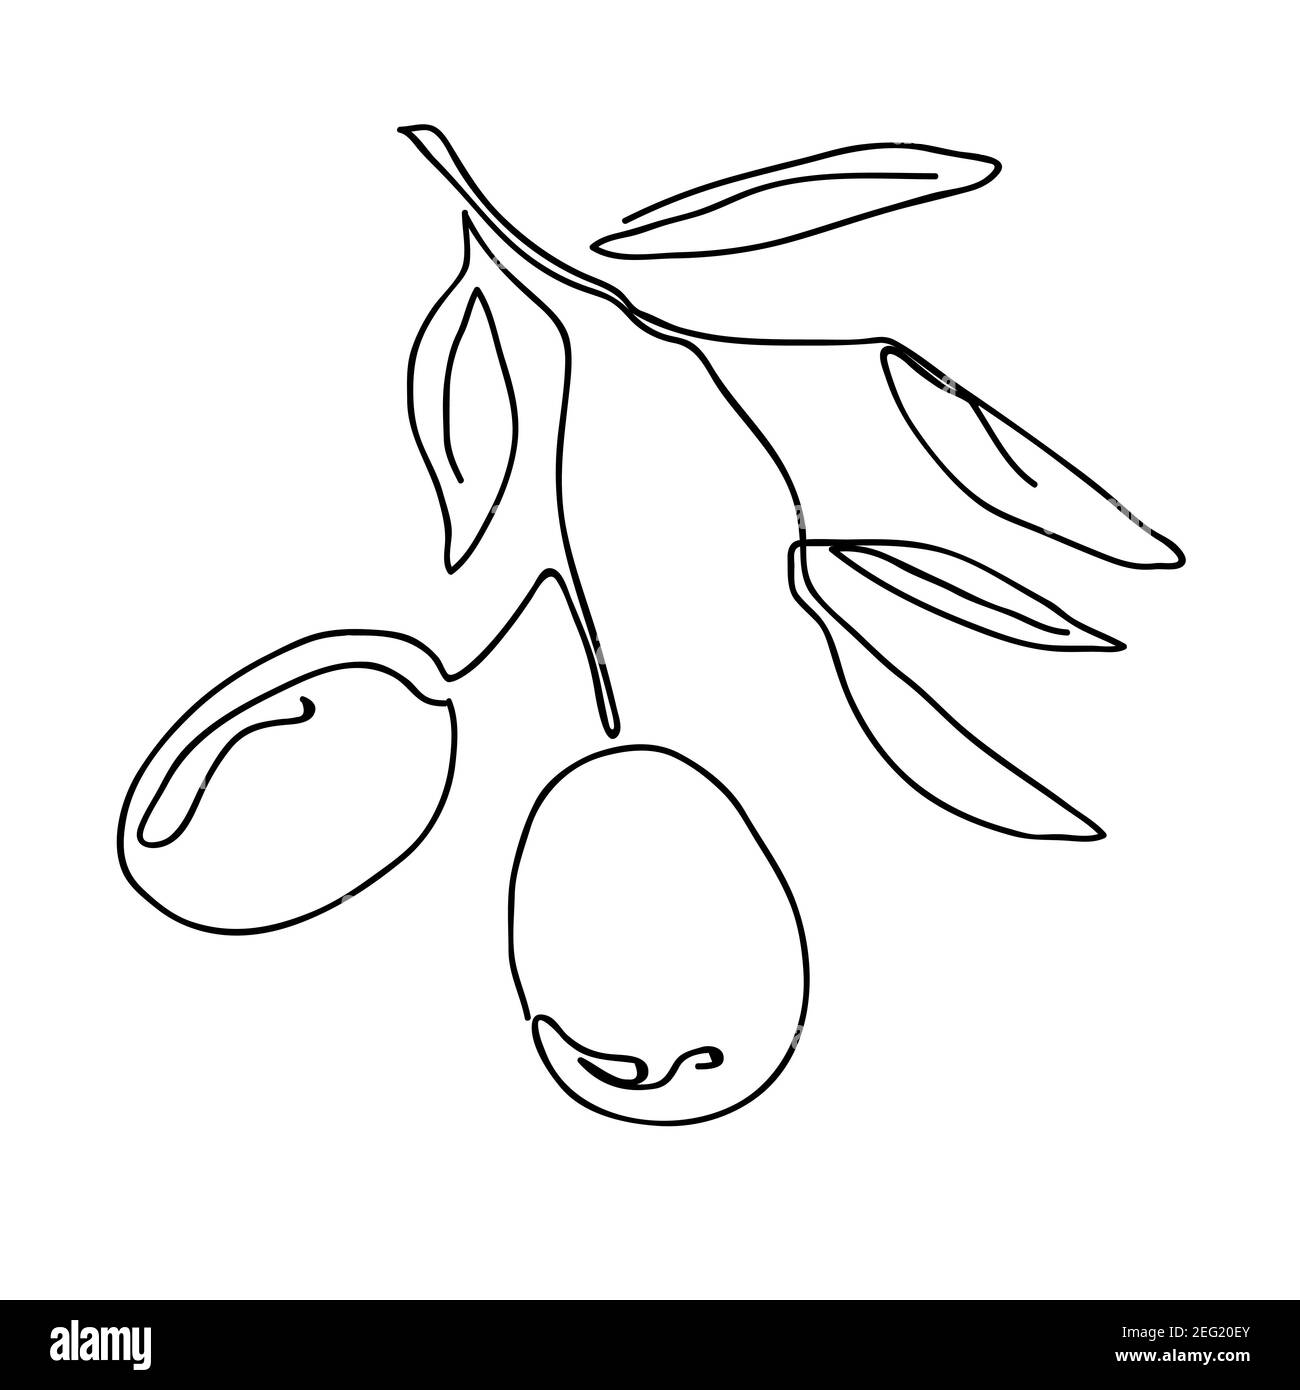 Disegno unico continuo di brunch biologico di frutta d'oliva. Illustrazione vettoriale grafica del disegno a una linea moderna Illustrazione Vettoriale